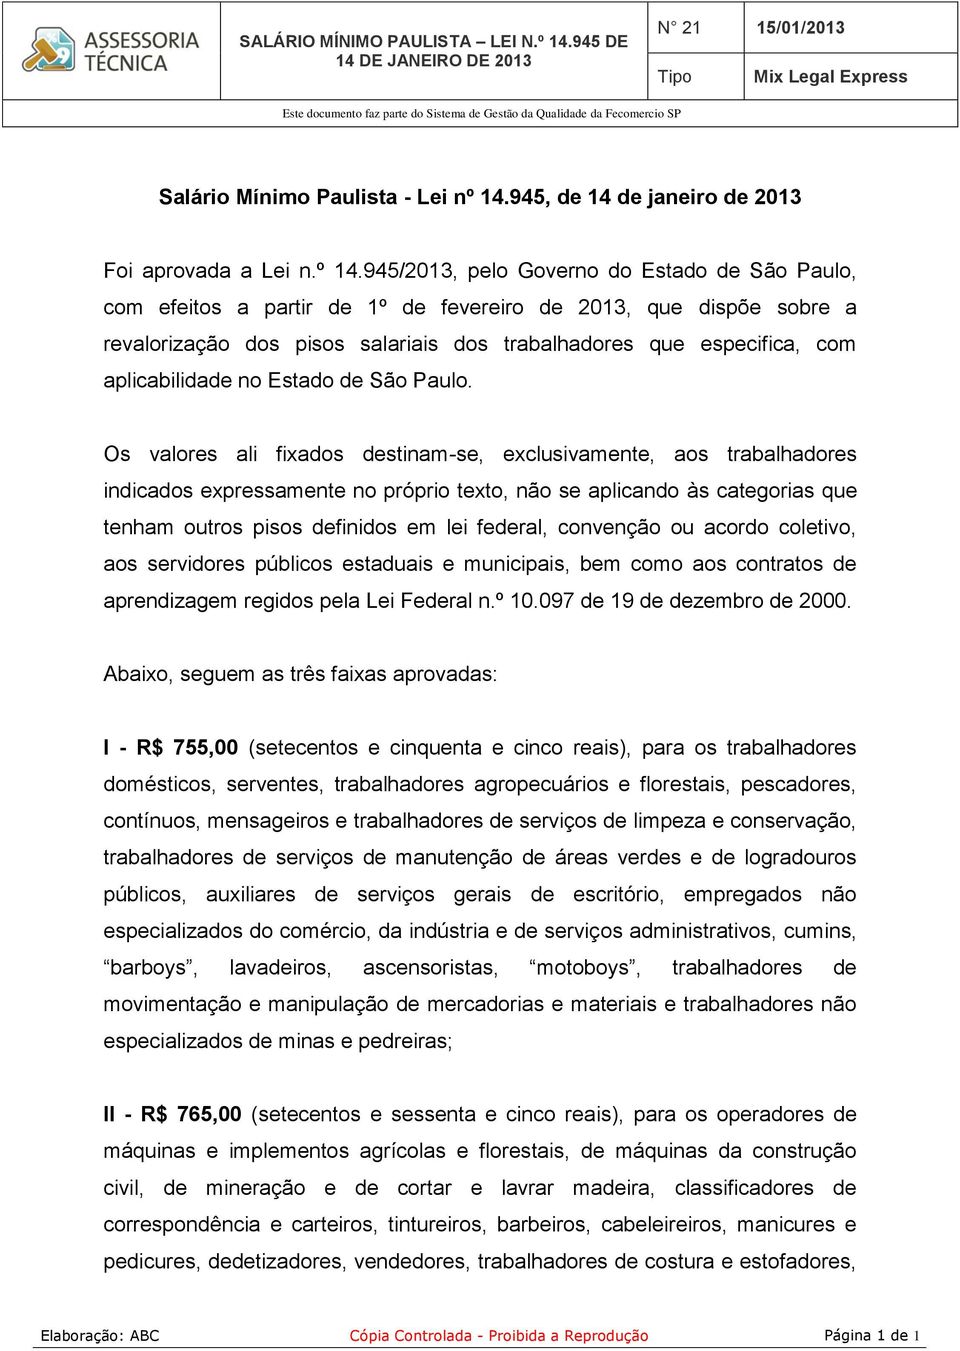 945/2013, pelo Governo do Estado de São Paulo, com efeitos a partir de 1º de fevereiro de 2013, que dispõe sobre a revalorização dos pisos salariais dos trabalhadores que especifica, com